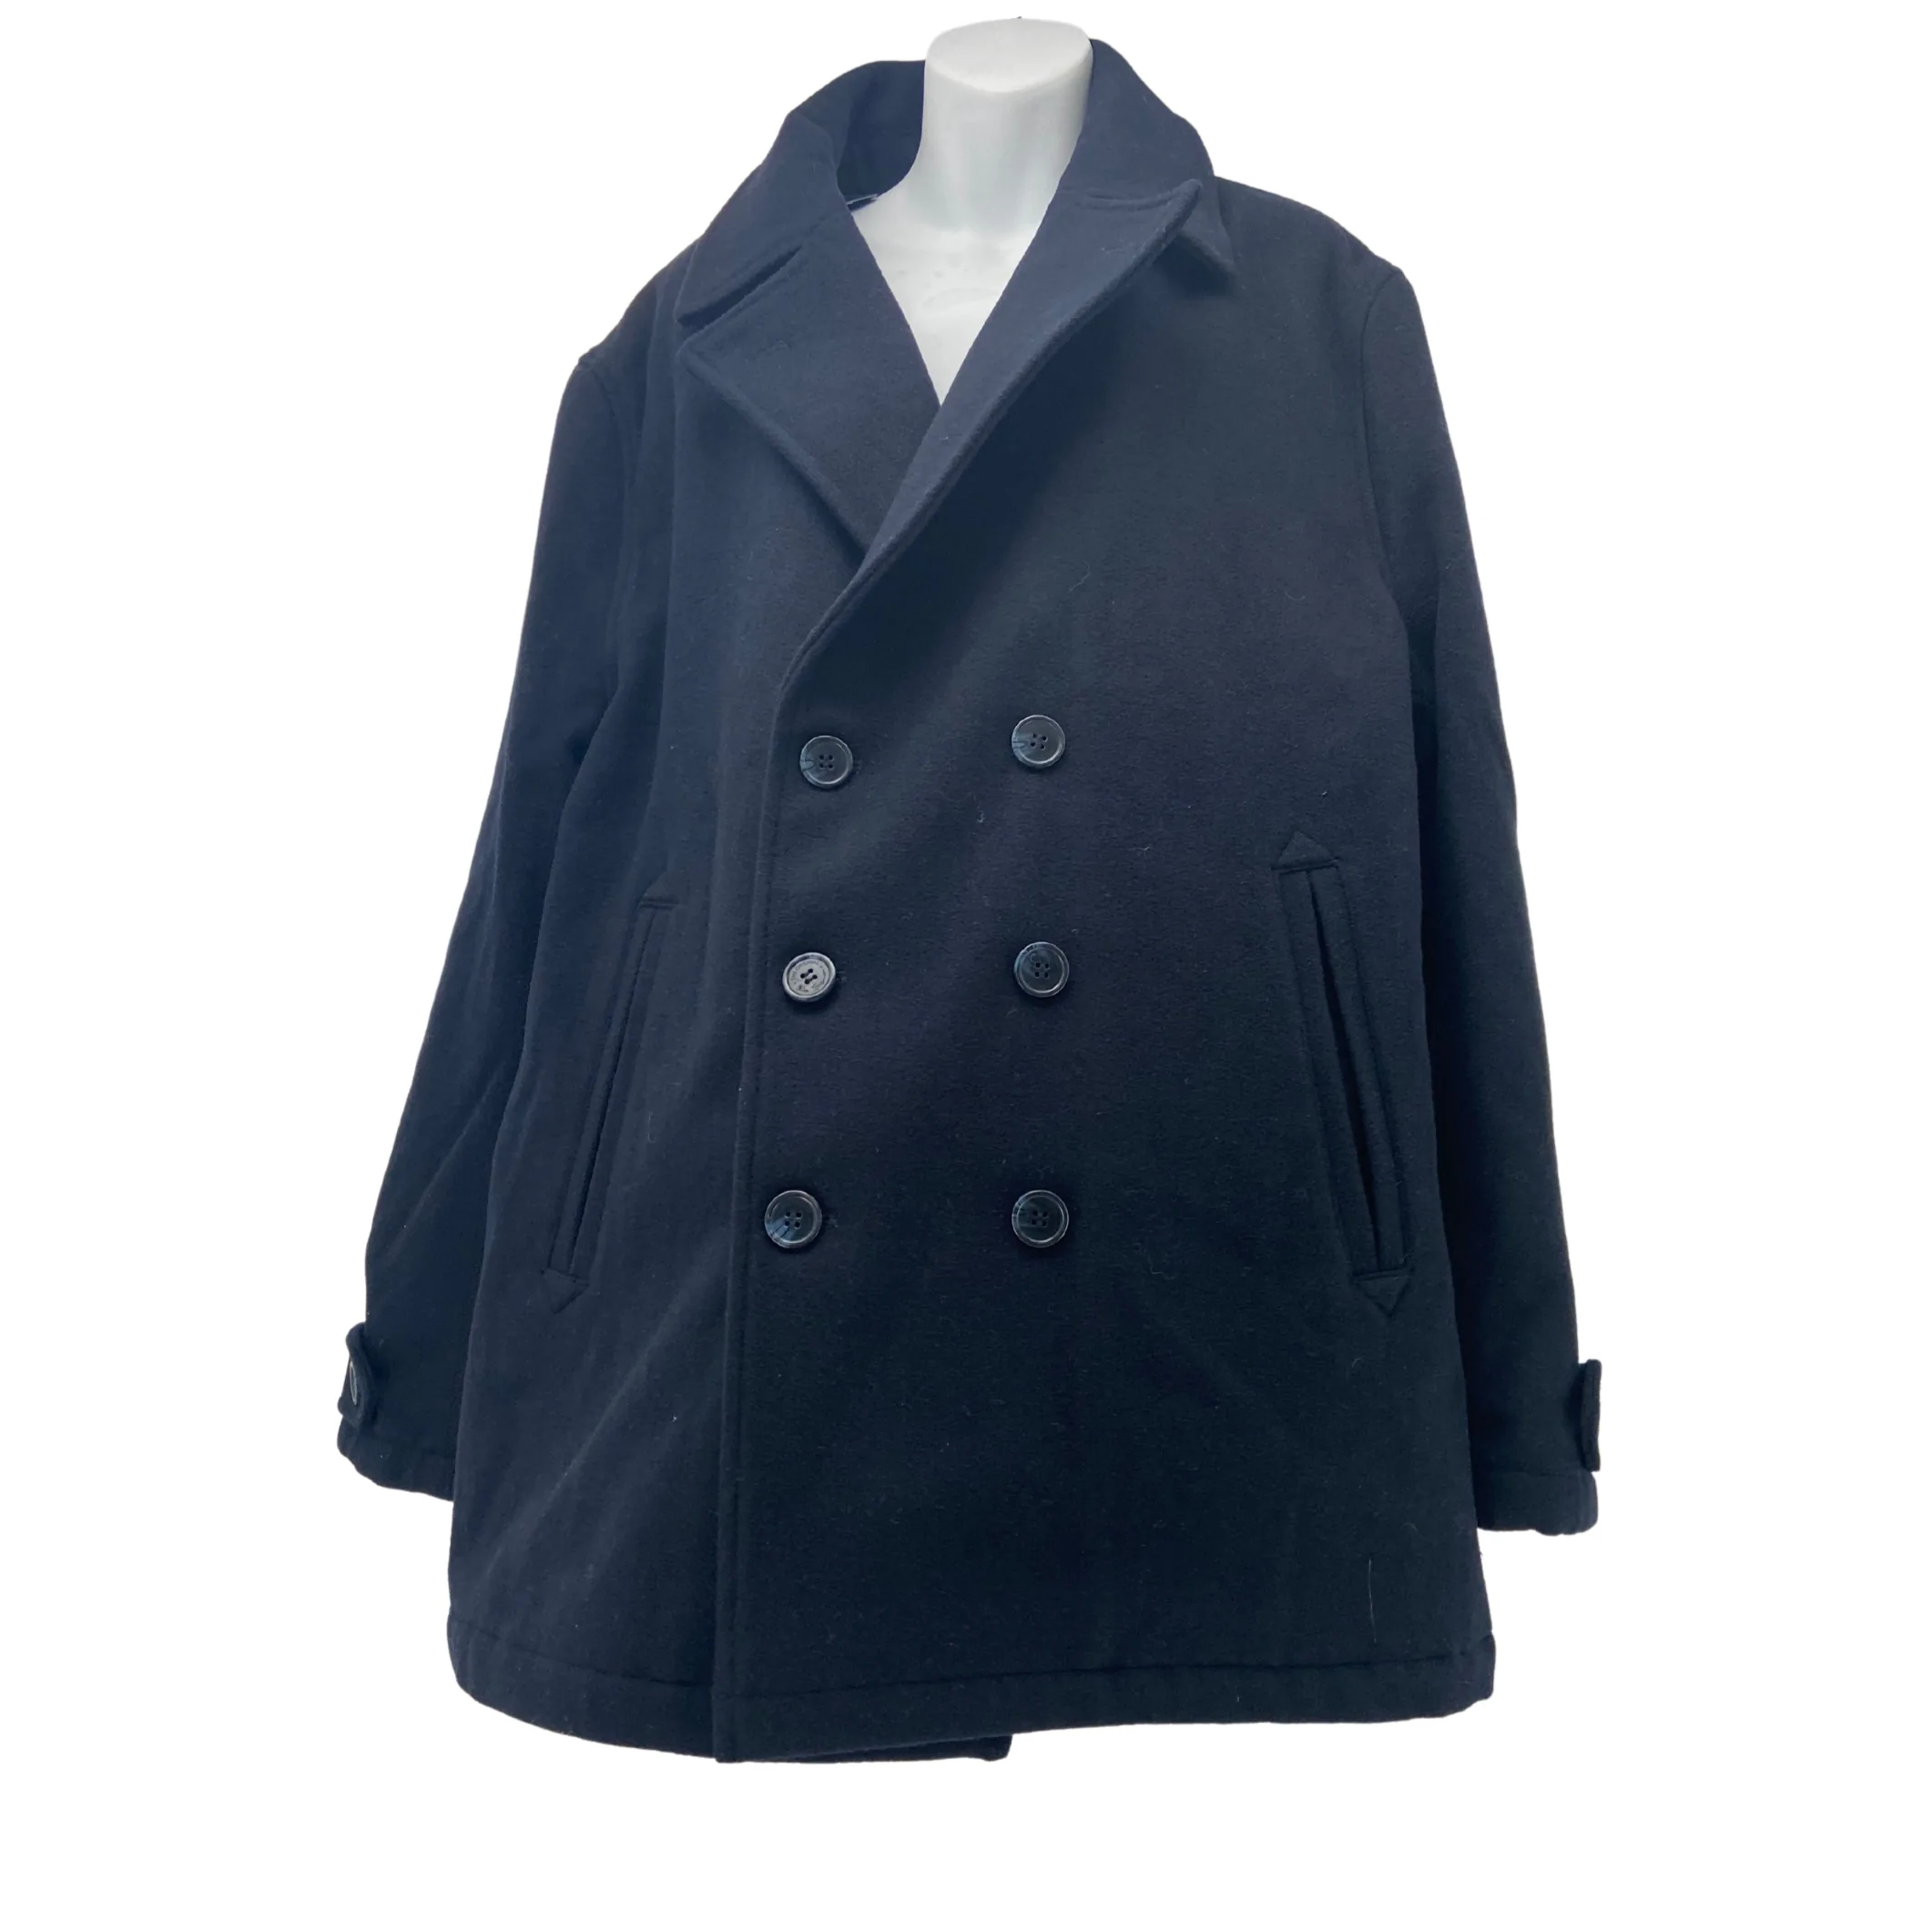 Ben Sherman: Men's Coat / Navy / Winter Jacket / Wool / XL